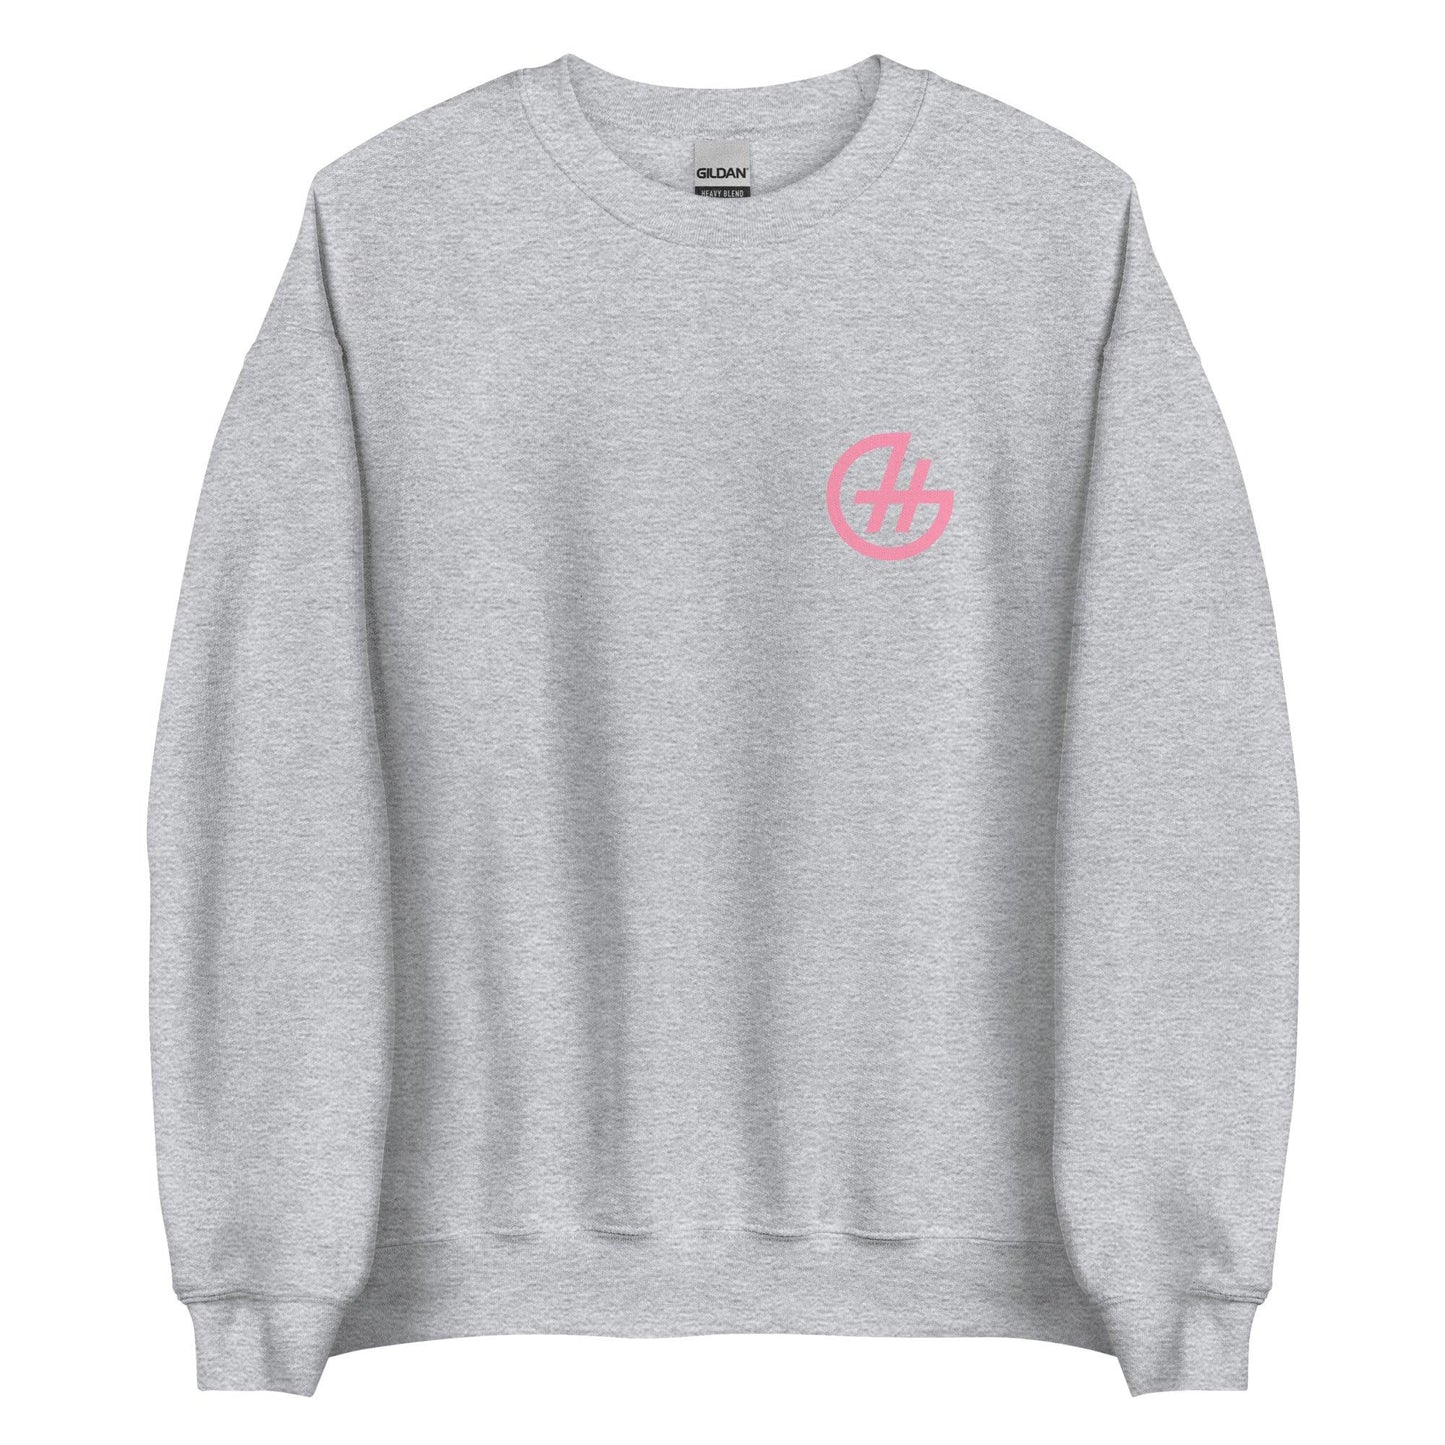 Hannah Gusters "The Brand" Sweatshirt - Fan Arch